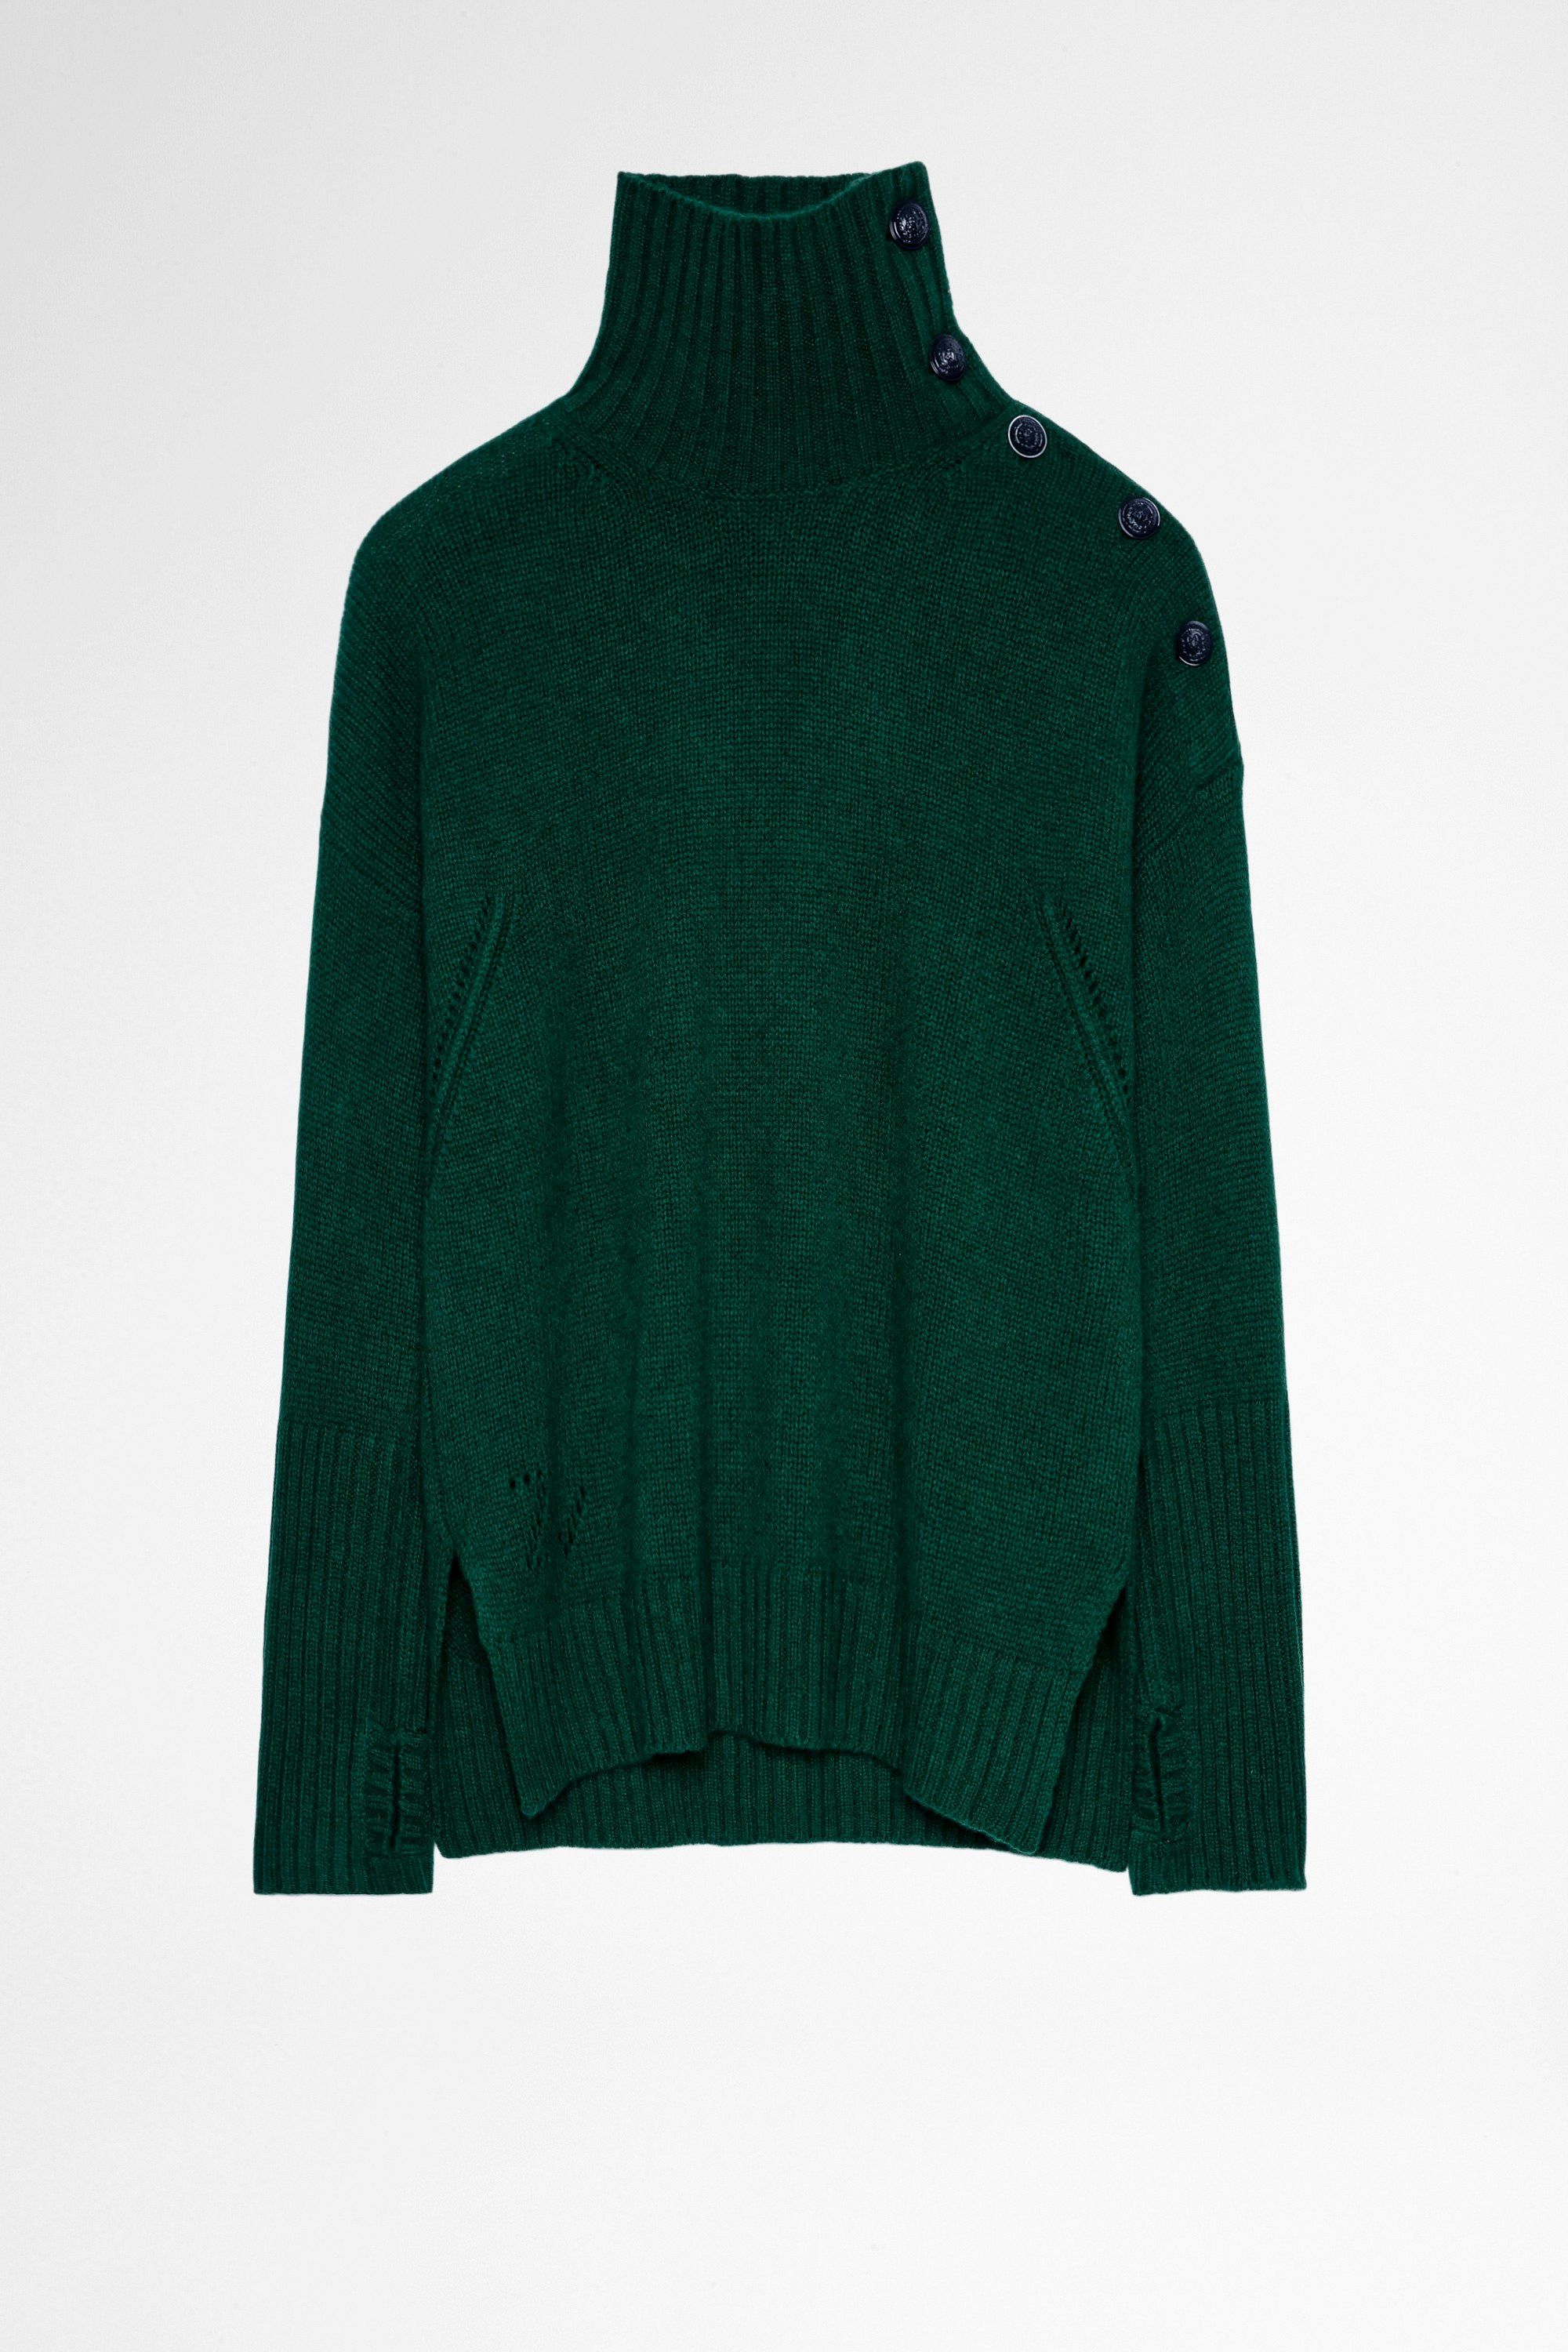 Jersey Alma Cachemira Jersey verde de lana y cachemira con cuello vuelto y botones en contraste  